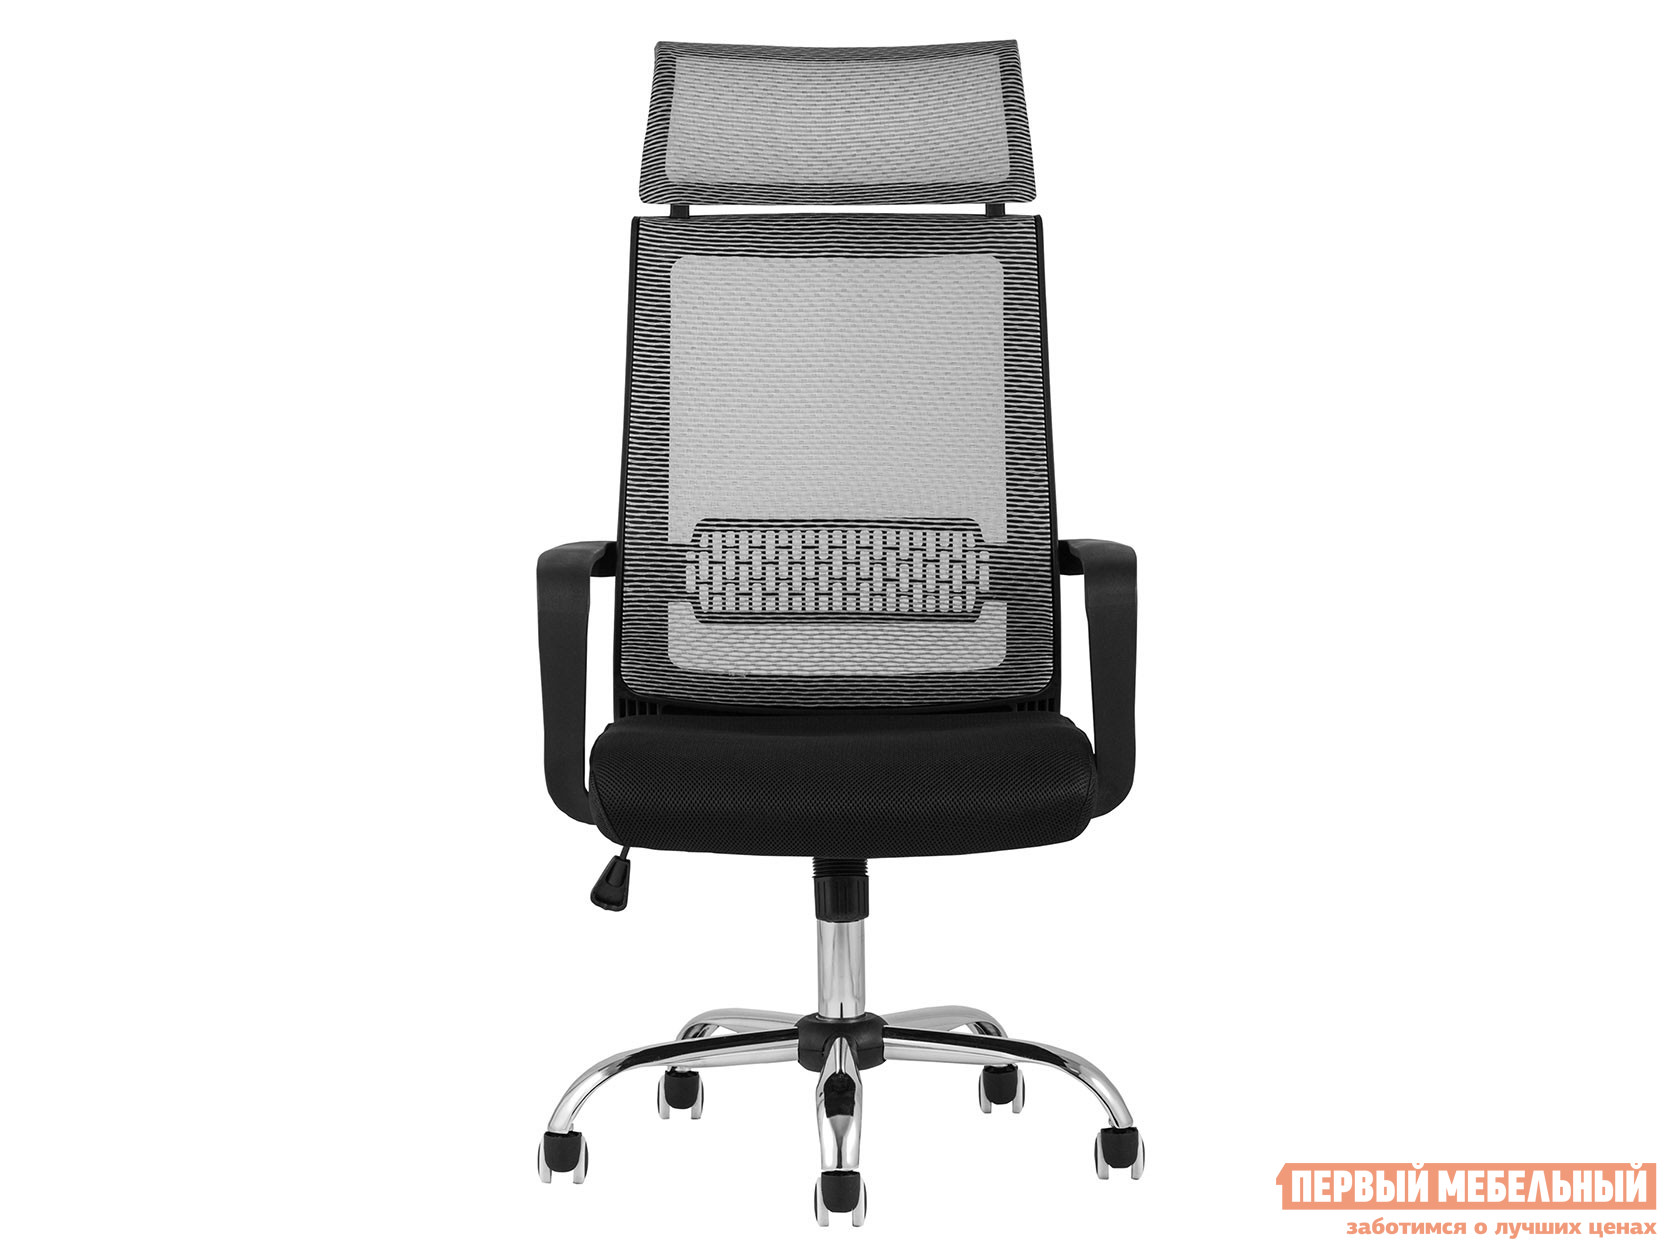 Офисное кресло  TopChairs Style Черный, сетка / Серый, сетка от Первый Мебельный